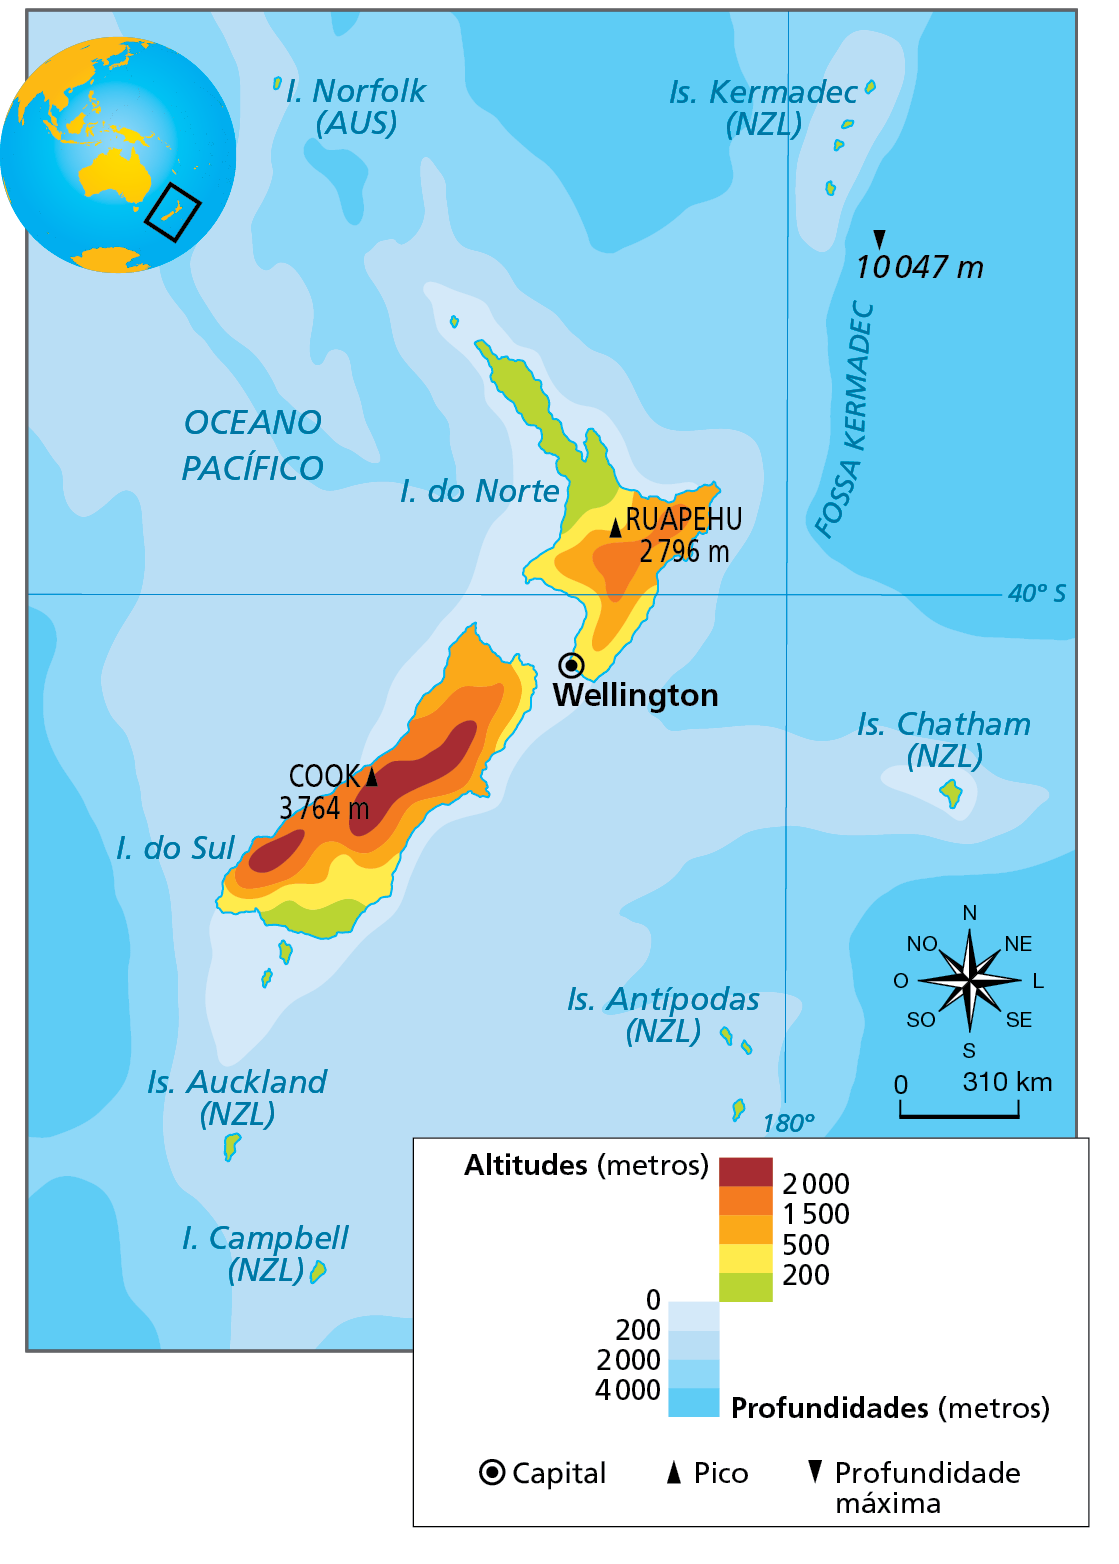 Mapa. Nova Zelândia: físico. Mapa da Nova Zelândia com as altitudes, profundidades do oceano e a localização da capital e dos picos. 
Acima de 2.000 metros: área no centro da Ilha do Sul e na porção sudoeste. No centro, está o pico Cook com 3.764 metros. 
De 1.500 a 2.000 metros: no centro e no sudoeste da Ilha do Sul, contornando as áreas com altitudes acima de 2.000 metros.  
De 500 a 1.500 metros: no sudoeste, leste e noroeste da Ilha do Sul e na porção central da Ilha do Norte. Na porção entra da Ilha do Norte está o Pico Ruapehu, com 2.796 metros.
De 200 a 500 metros: estreita faixa a nordeste e no sul da Ilha do Sul e faixa contornando as porções sudeste, sul, sudoeste, oeste e noroeste da Ilha do Norte. 
Menos de 200 metros: sul da Ilha do Sul e noroeste da Ilha do Norte e em todas as ilhas próximas (Auckland, Campbell, Antípodas, Chatham e Kermadec). 
Profundidades, em metros: 
Zero a 200 metros: toda a faixa litorânea mais próxima às ilhas do Norte, do Sul, Chatham e Kermadec. 
200 a 2.000 metros: em toda a porção do Oceano Pacífico próxima à faixa de 200 a 2.000 metros que circunda todas as ilhas da Nova Zelândia.
2.000 a mais de 4.000 metros: áreas mais distantes em relação às ilhas. A nordeste da Ilha do Norte, na Fossa Kermadec, está a profundidade máxima: 10.047 metros.
Capital da Nova Zelândia: Wellington, no extremo sudoeste da Ilha do Norte. 
Abaixo, rosa dos ventos e escala de 0 a 310 quilômetros.